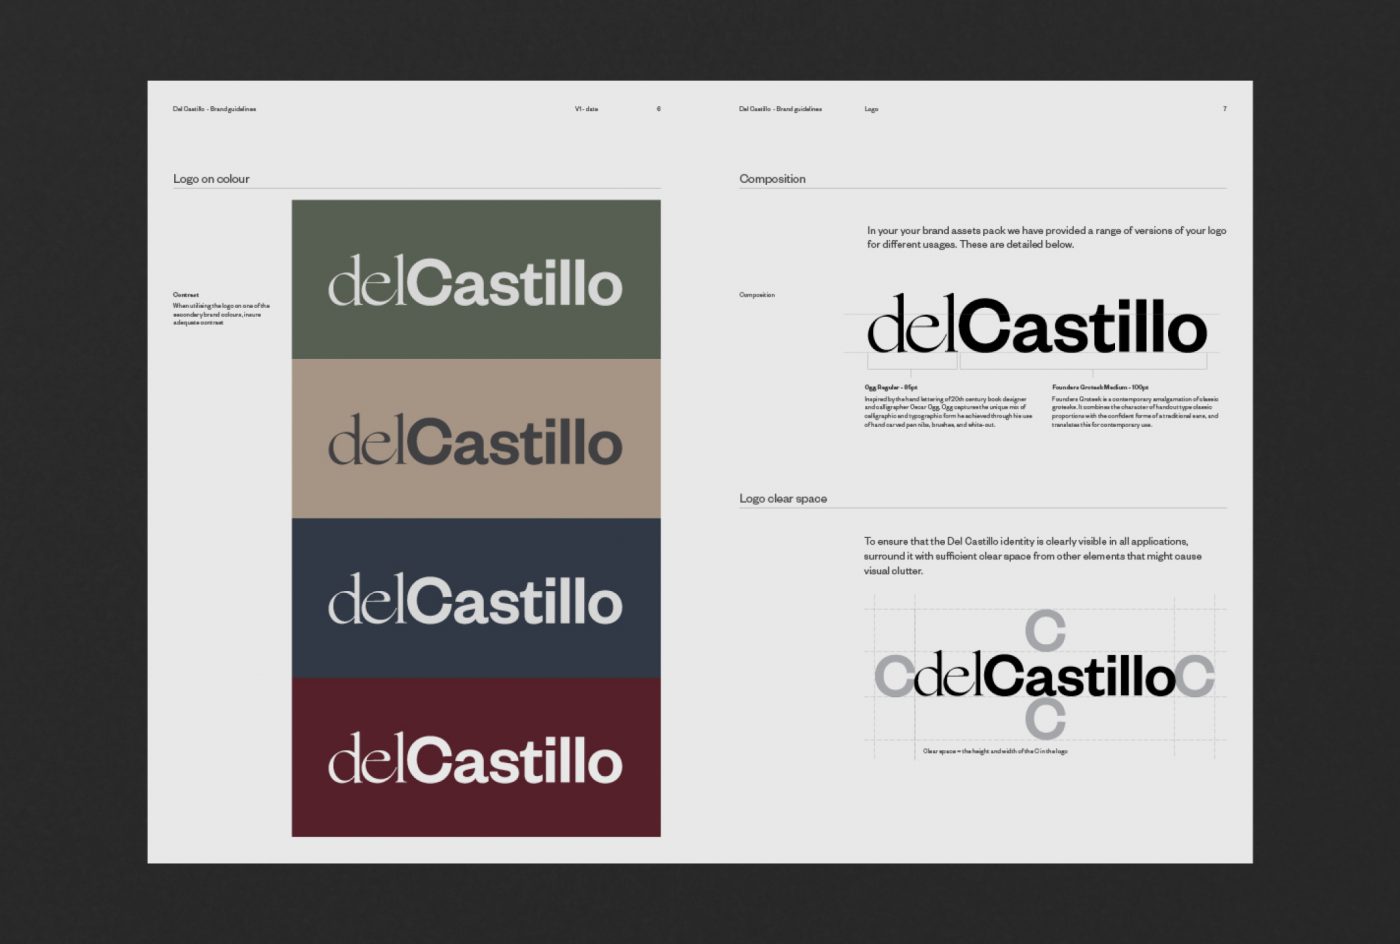 Studio del Castillo brand guidelines